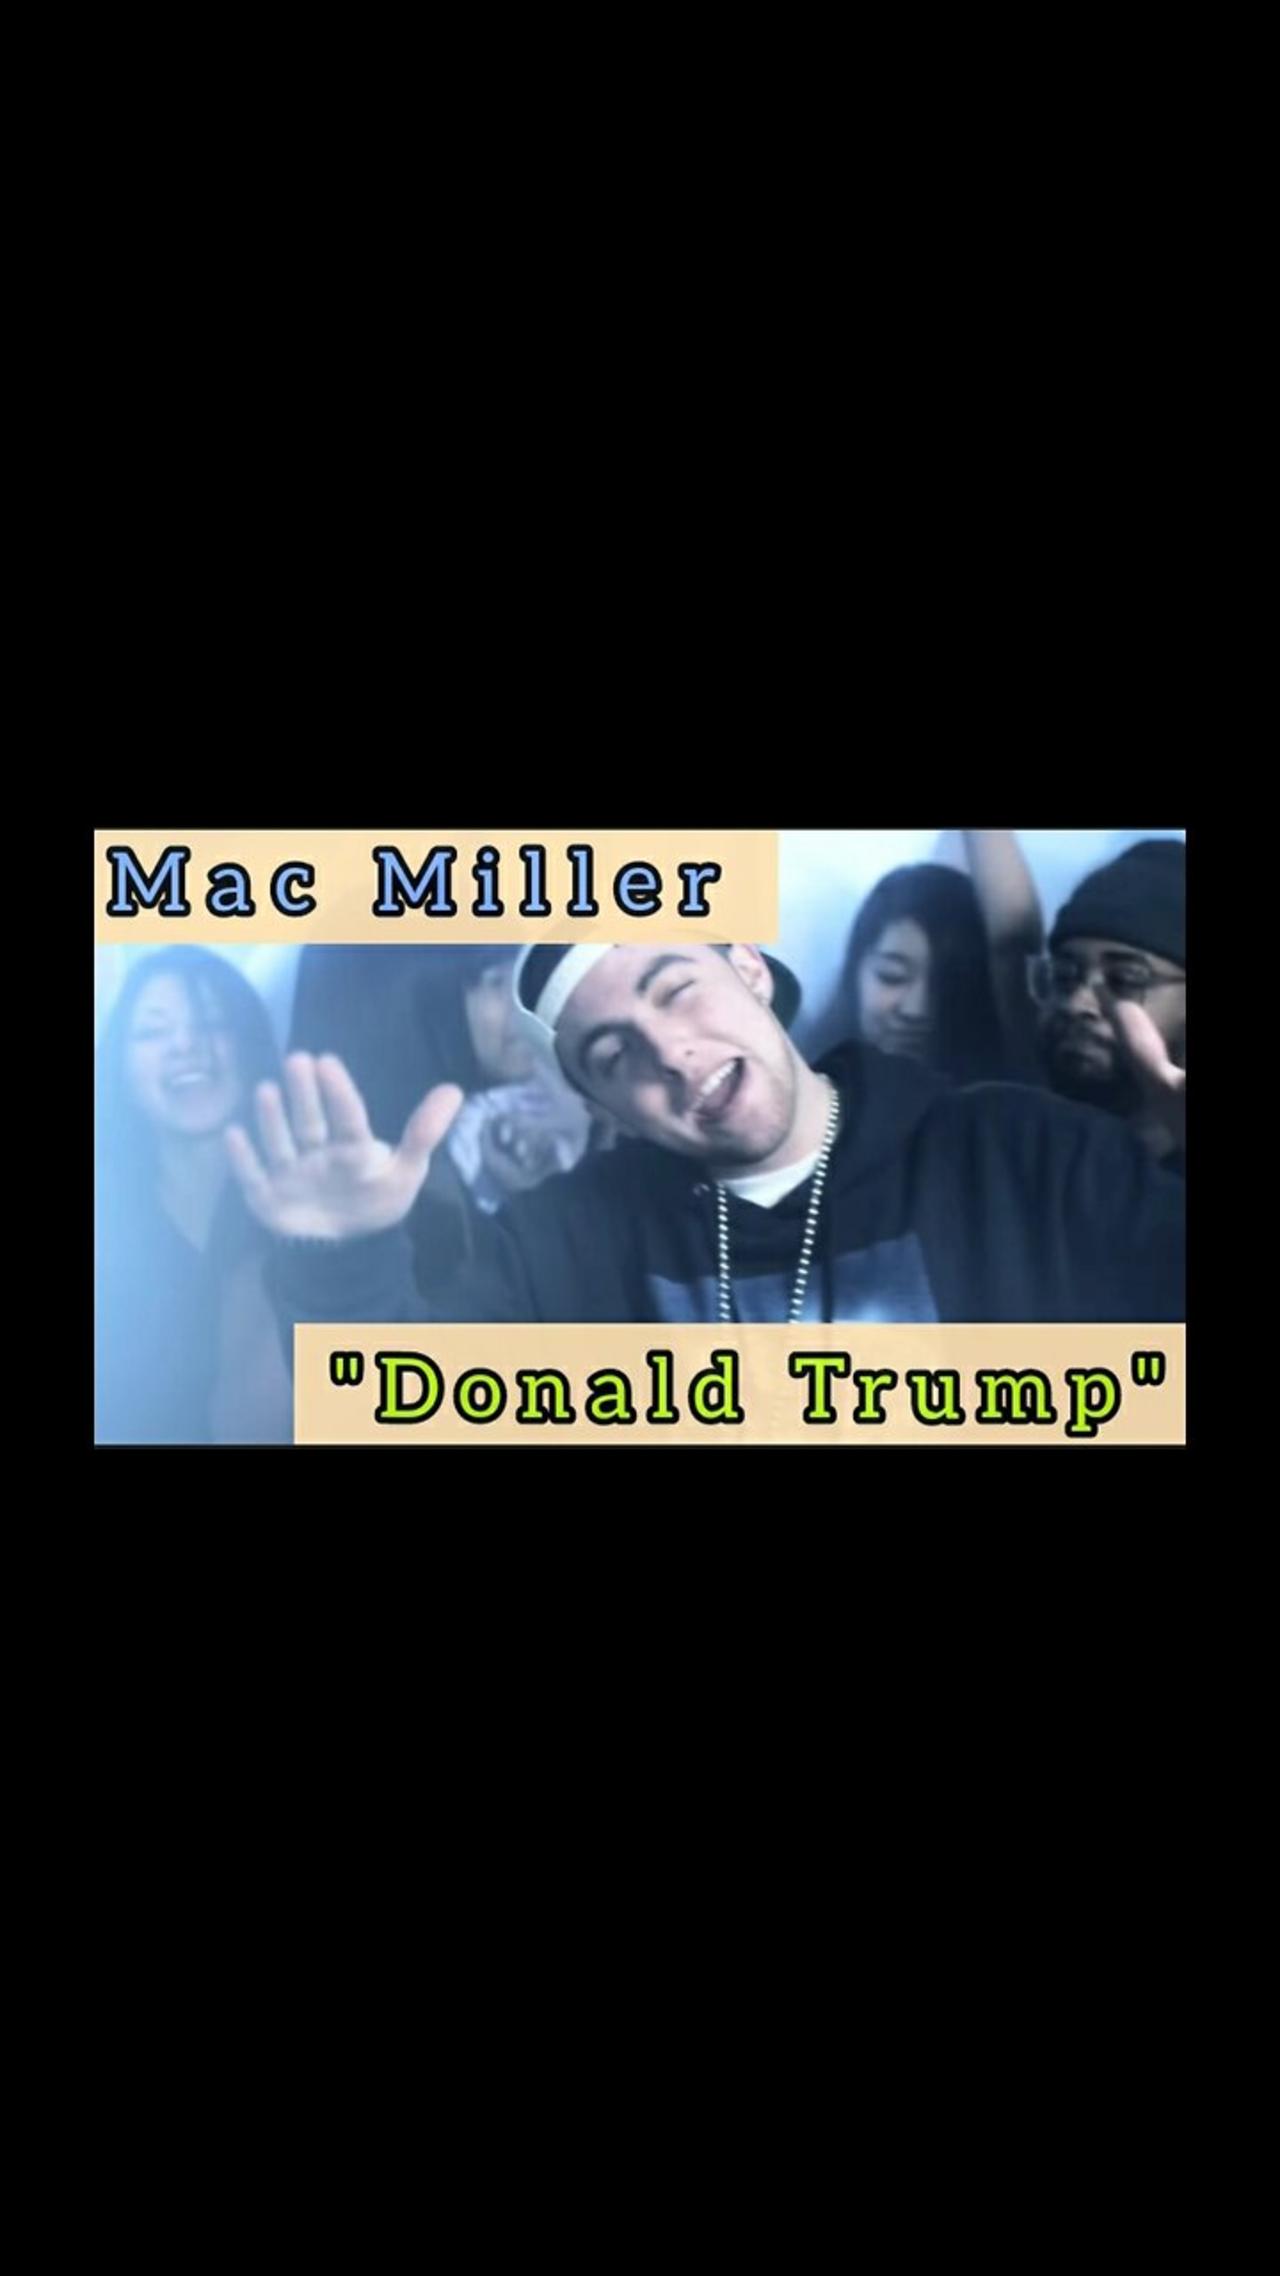 Mac Miller - "Donald Trump"